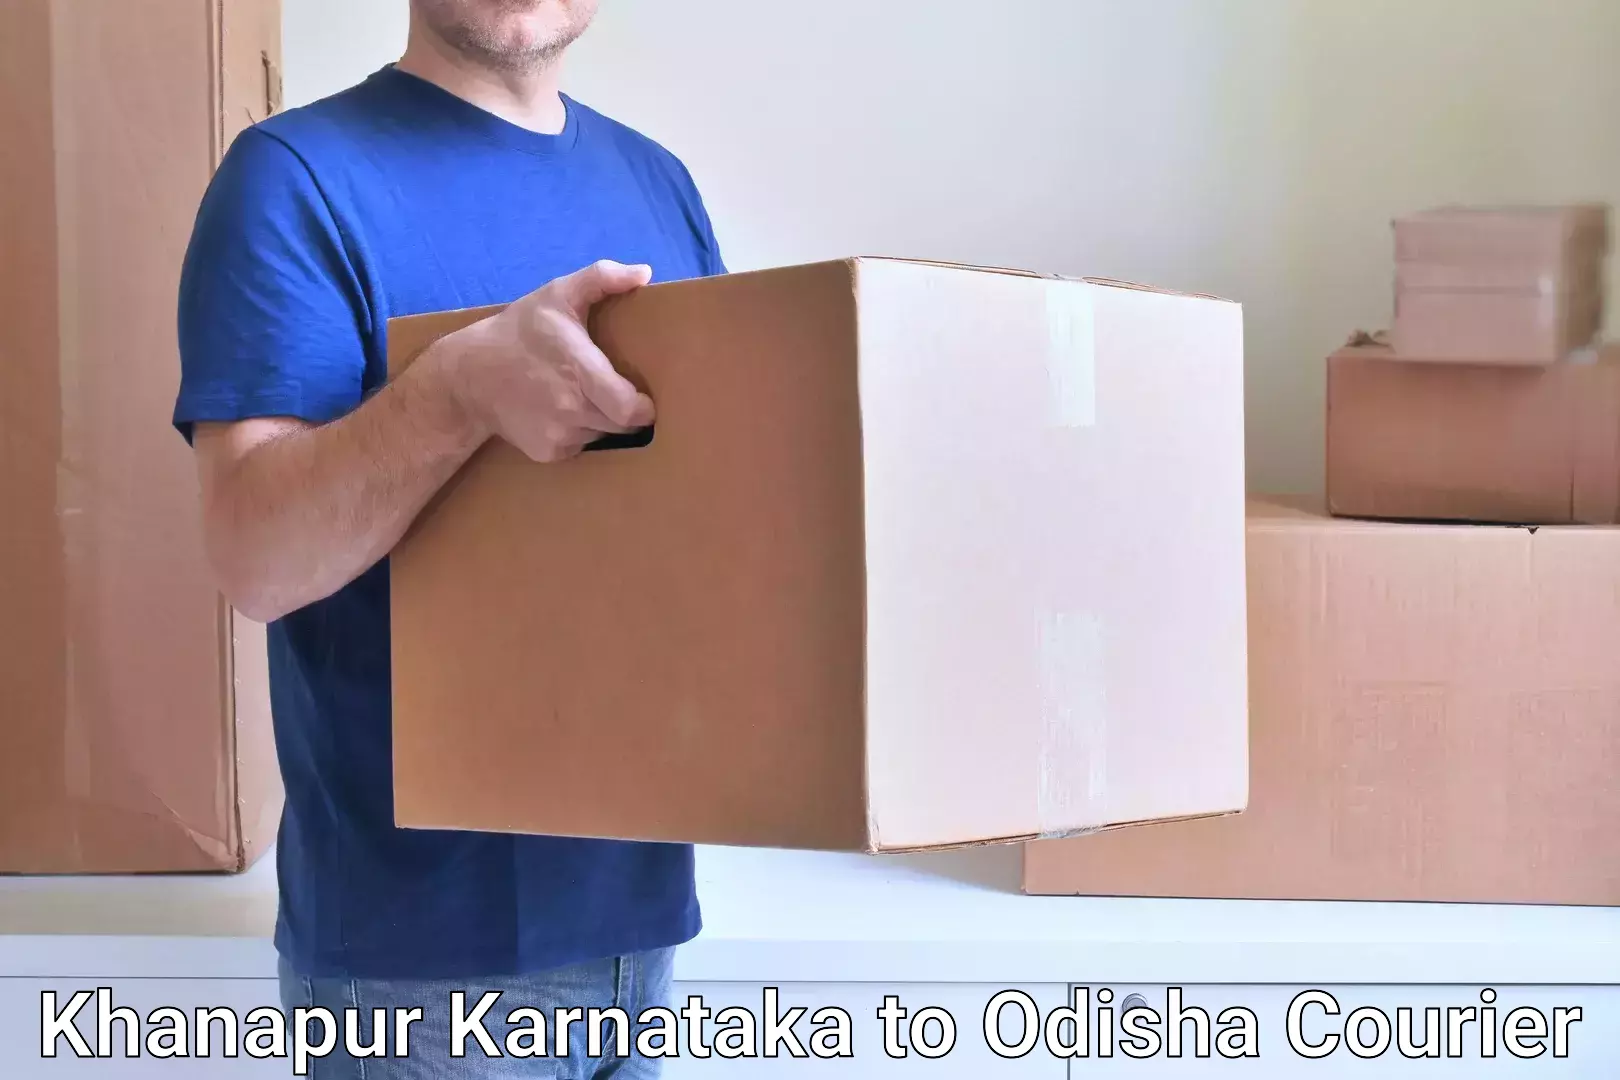 Courier tracking online Khanapur Karnataka to Patkura